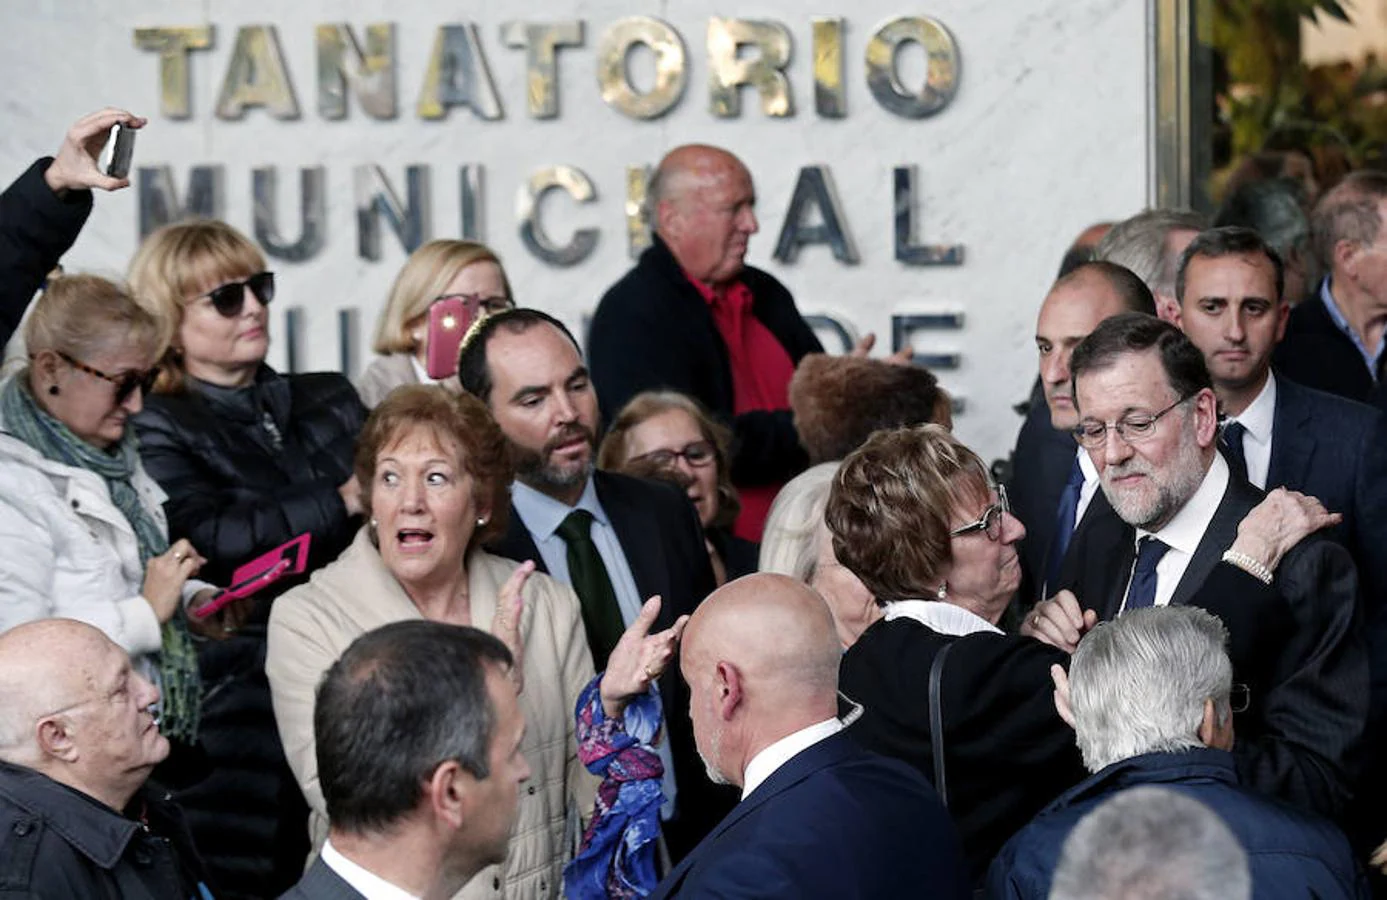 El presidente del Gobierno, Mariano Rajoy, sale del Tanatorio Municipal de Valencia, tras la misa celebrada en memoria de Rita Barberá